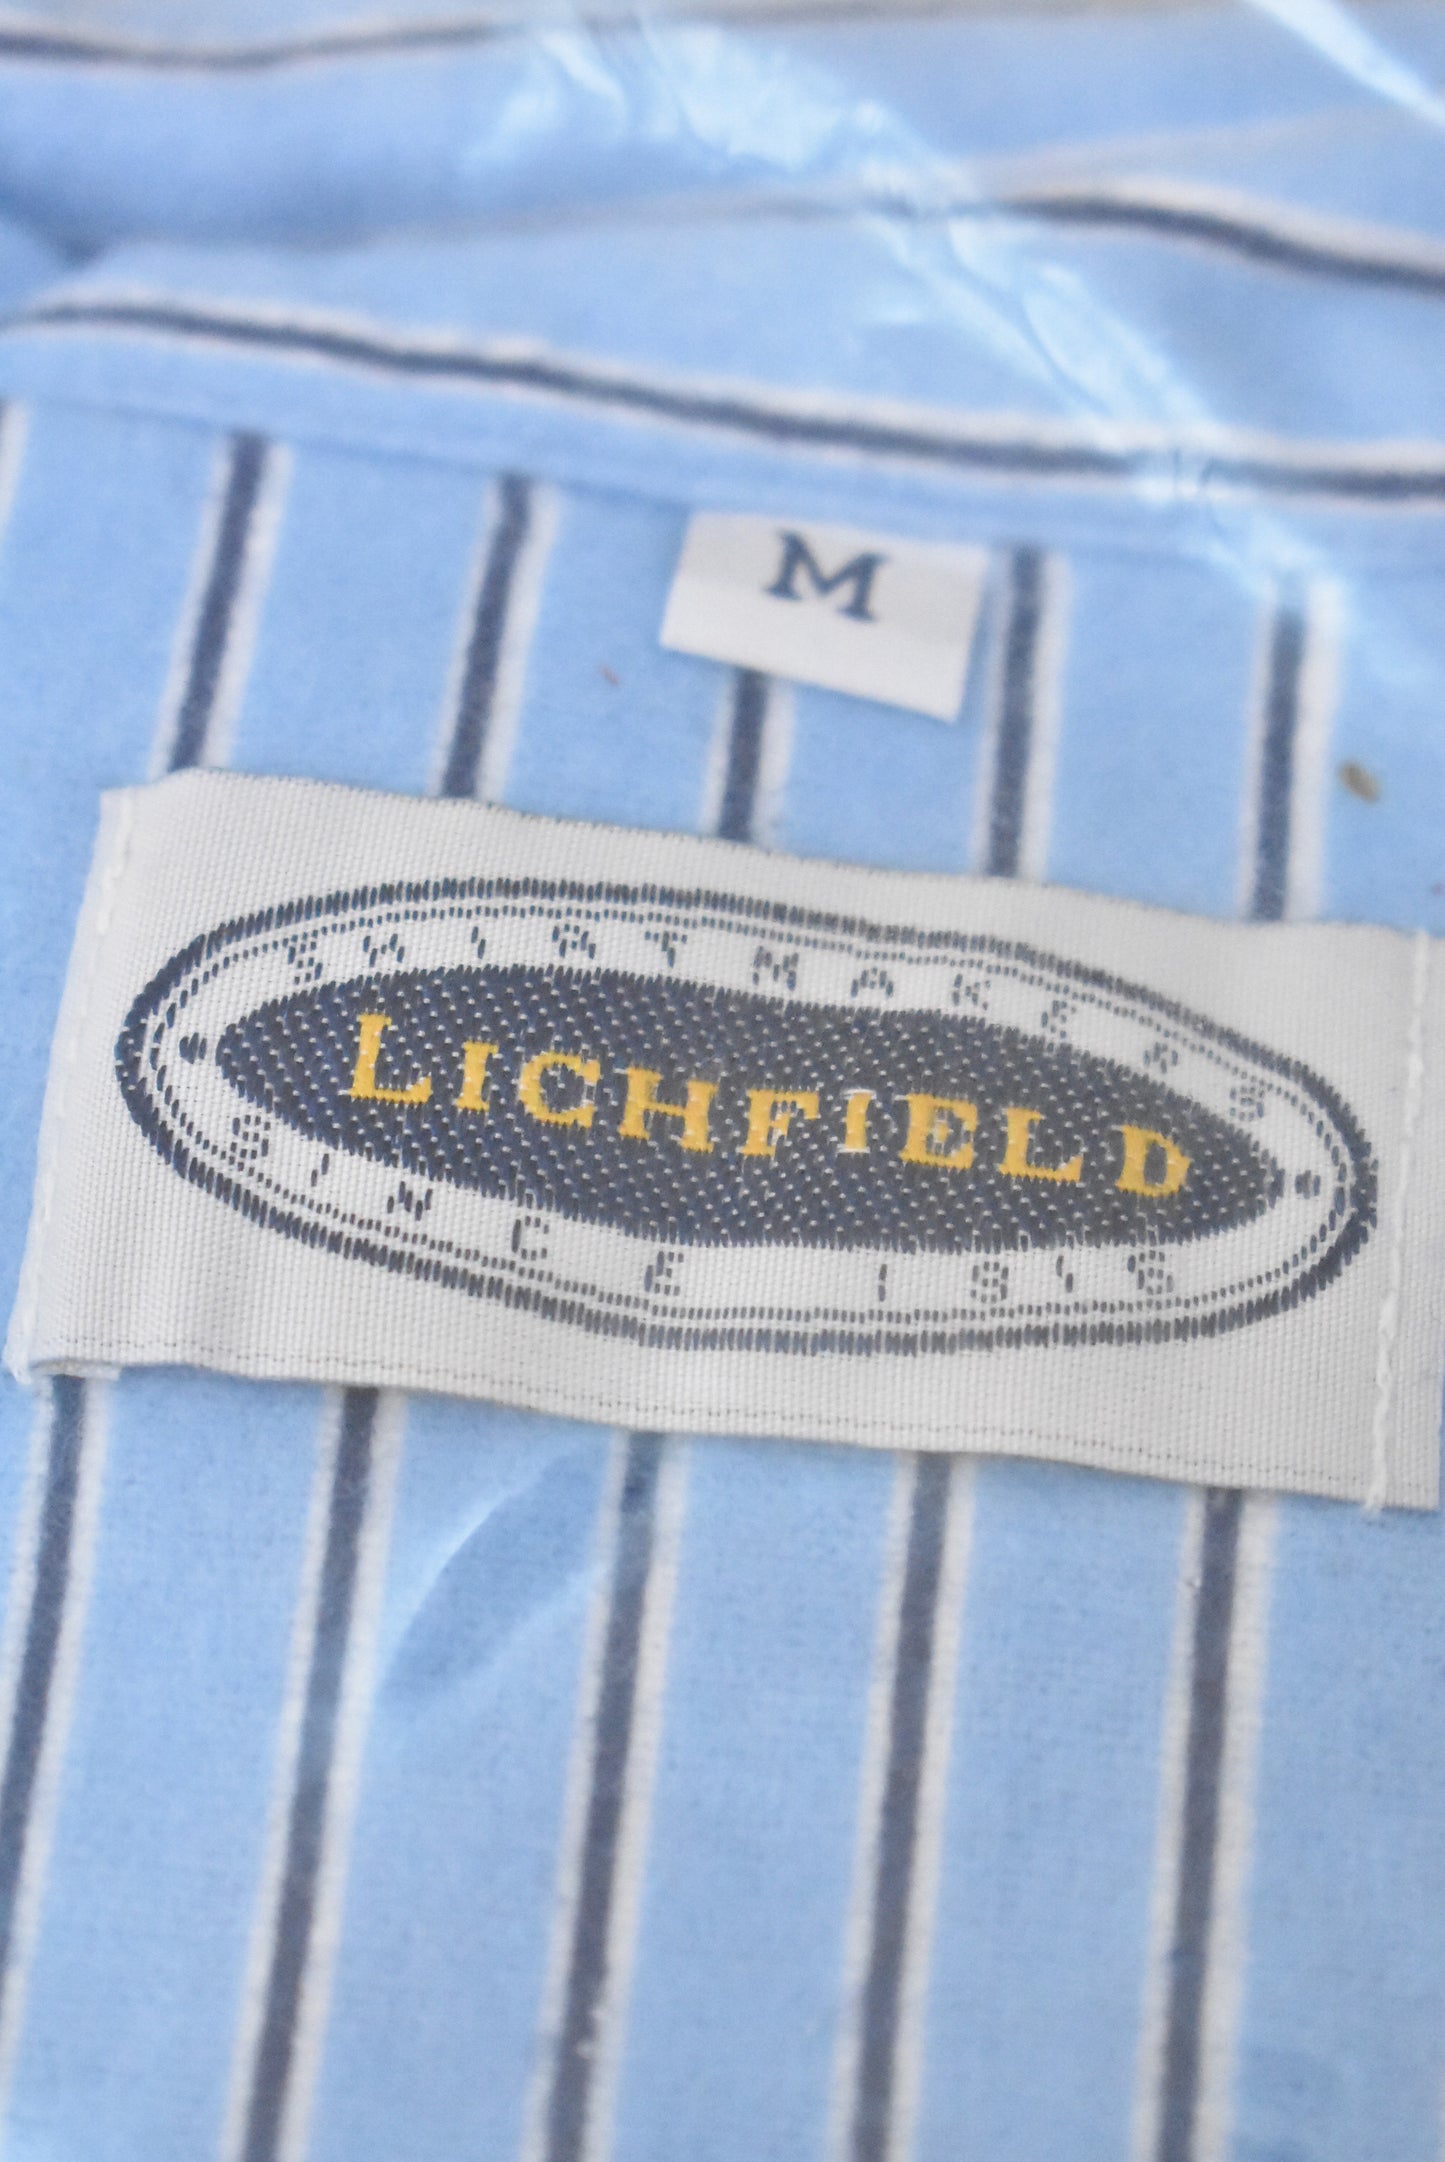 Lichfield retro cotton pjs, M (NWT)